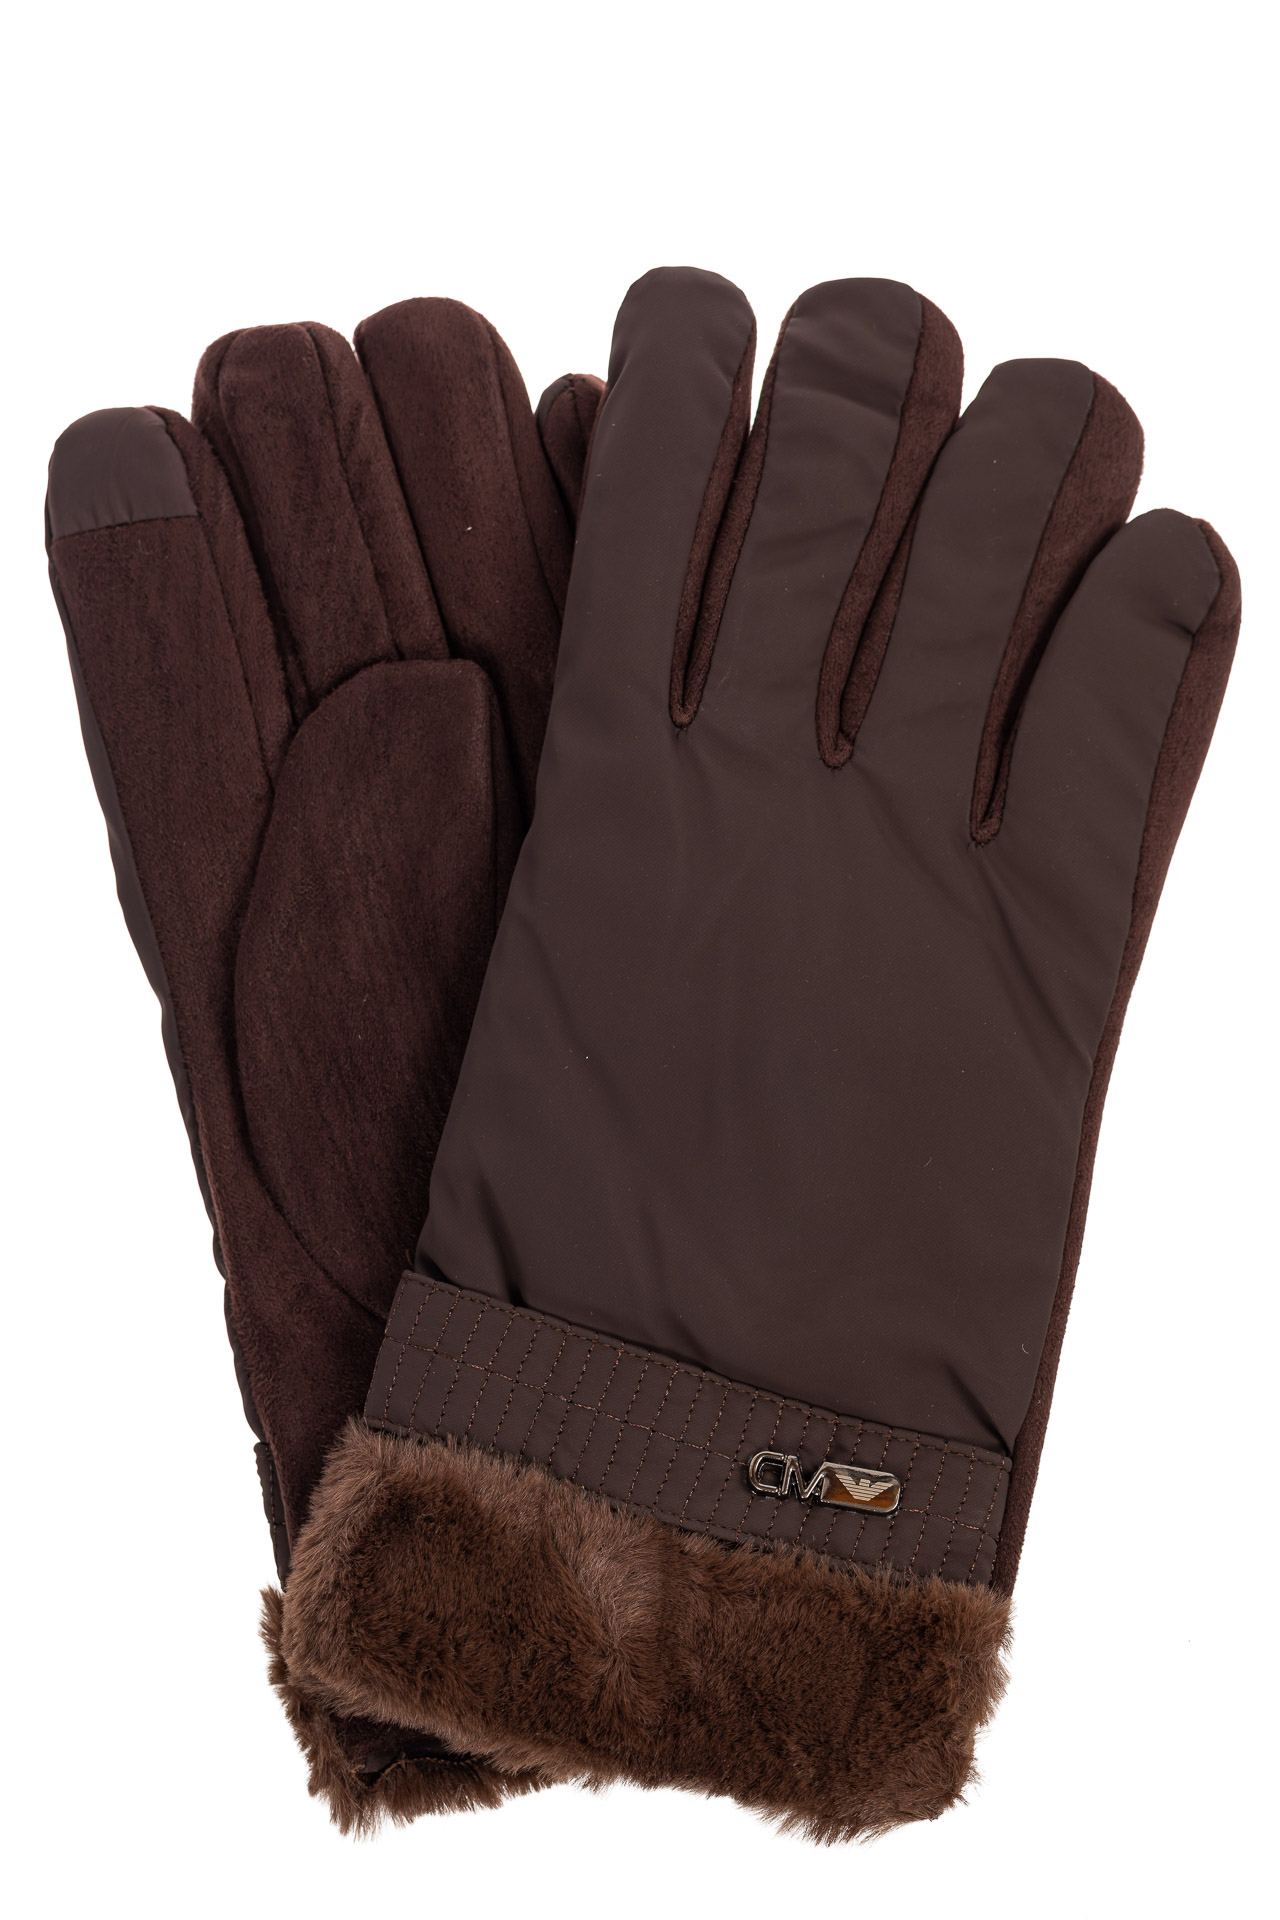 Утепленные перчатки мужские с меховыми манжетами, цвет коричневый